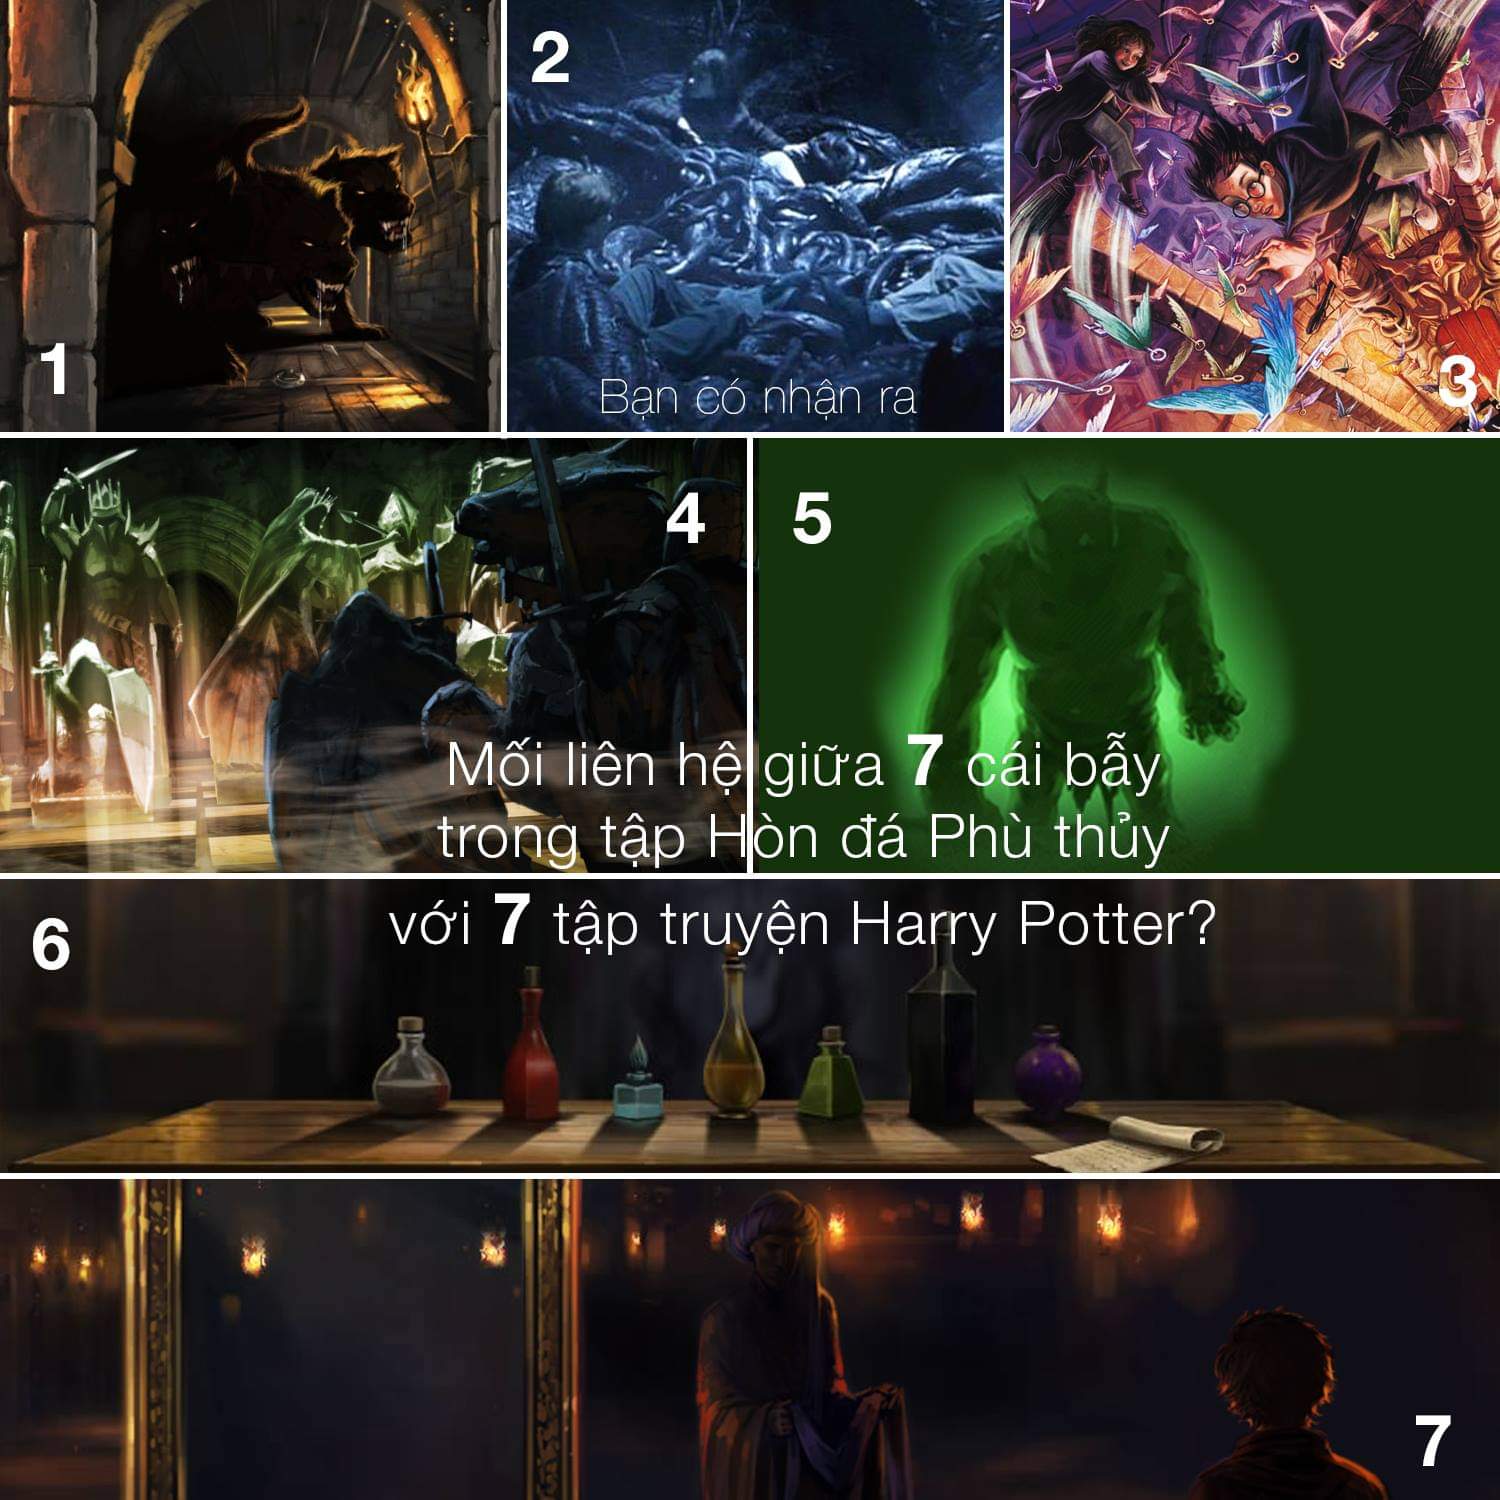 Mối liên hệ giữa bảy ải trong tập 1 với bảy tập truyện Harry Potter là có thật?